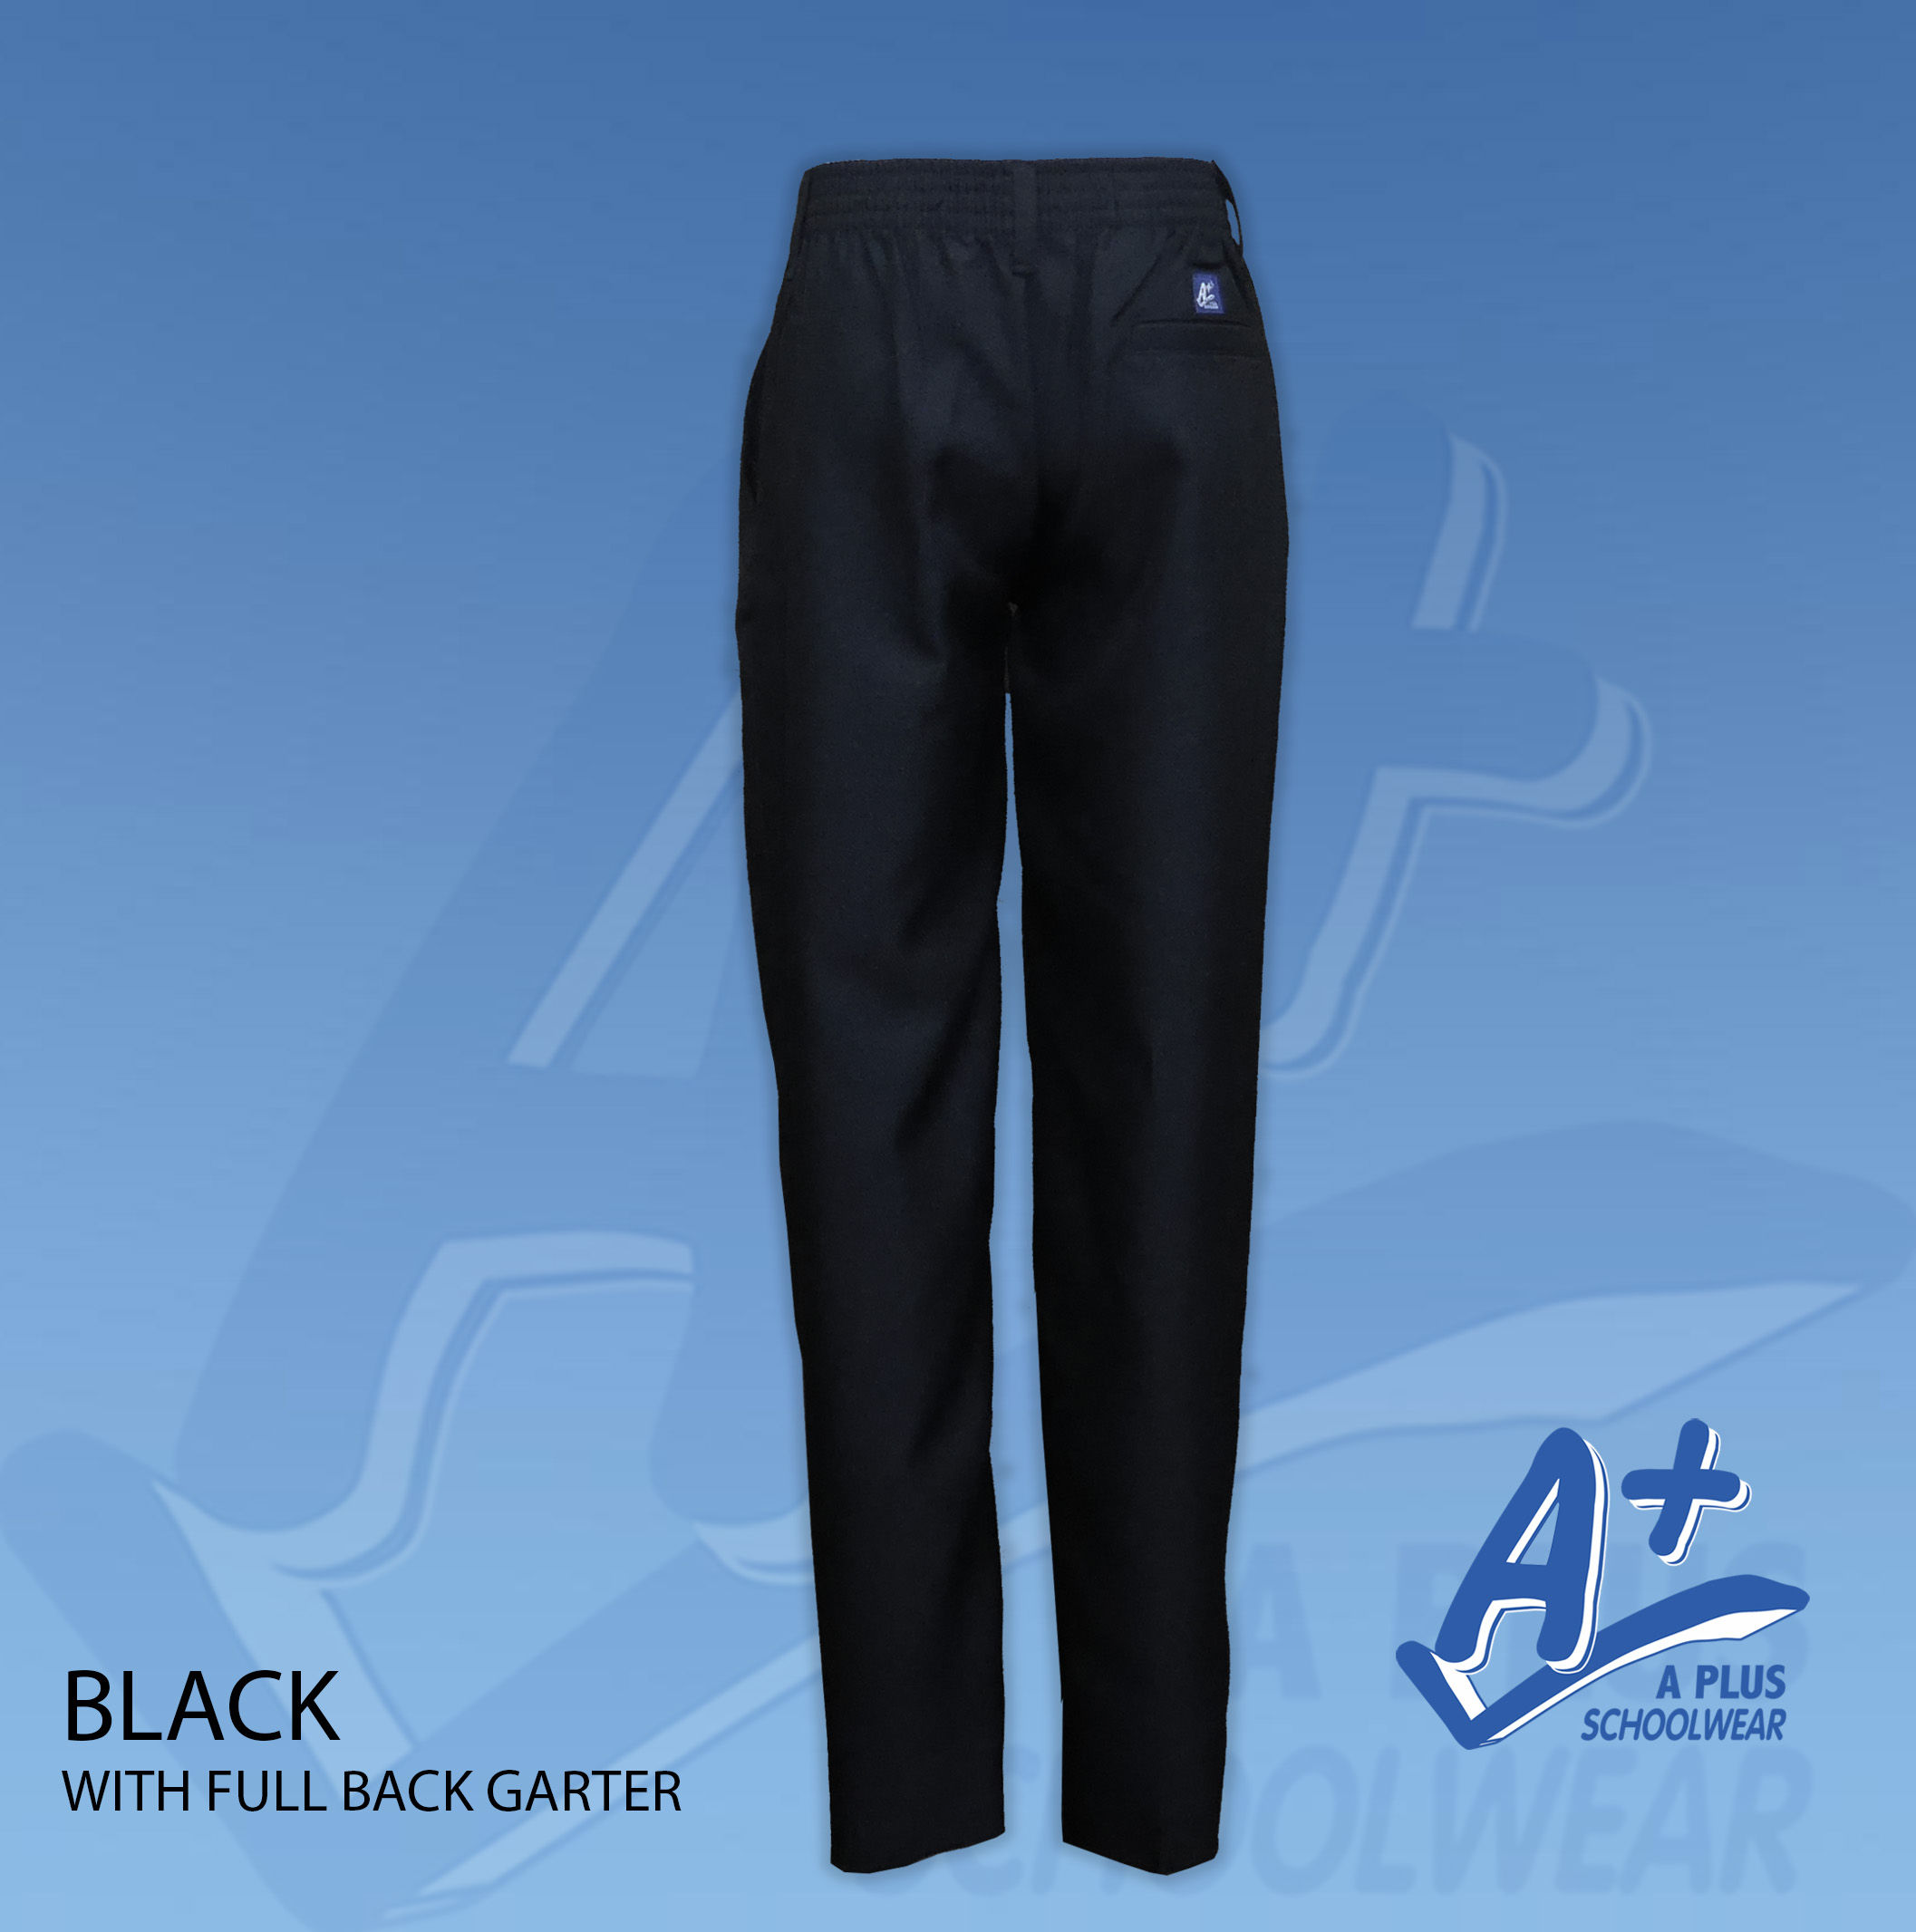 A+ Schoolwear Boys Kids/Teens Elastic Back School Uniform Pants KHAKI (size  4 to 2XL)